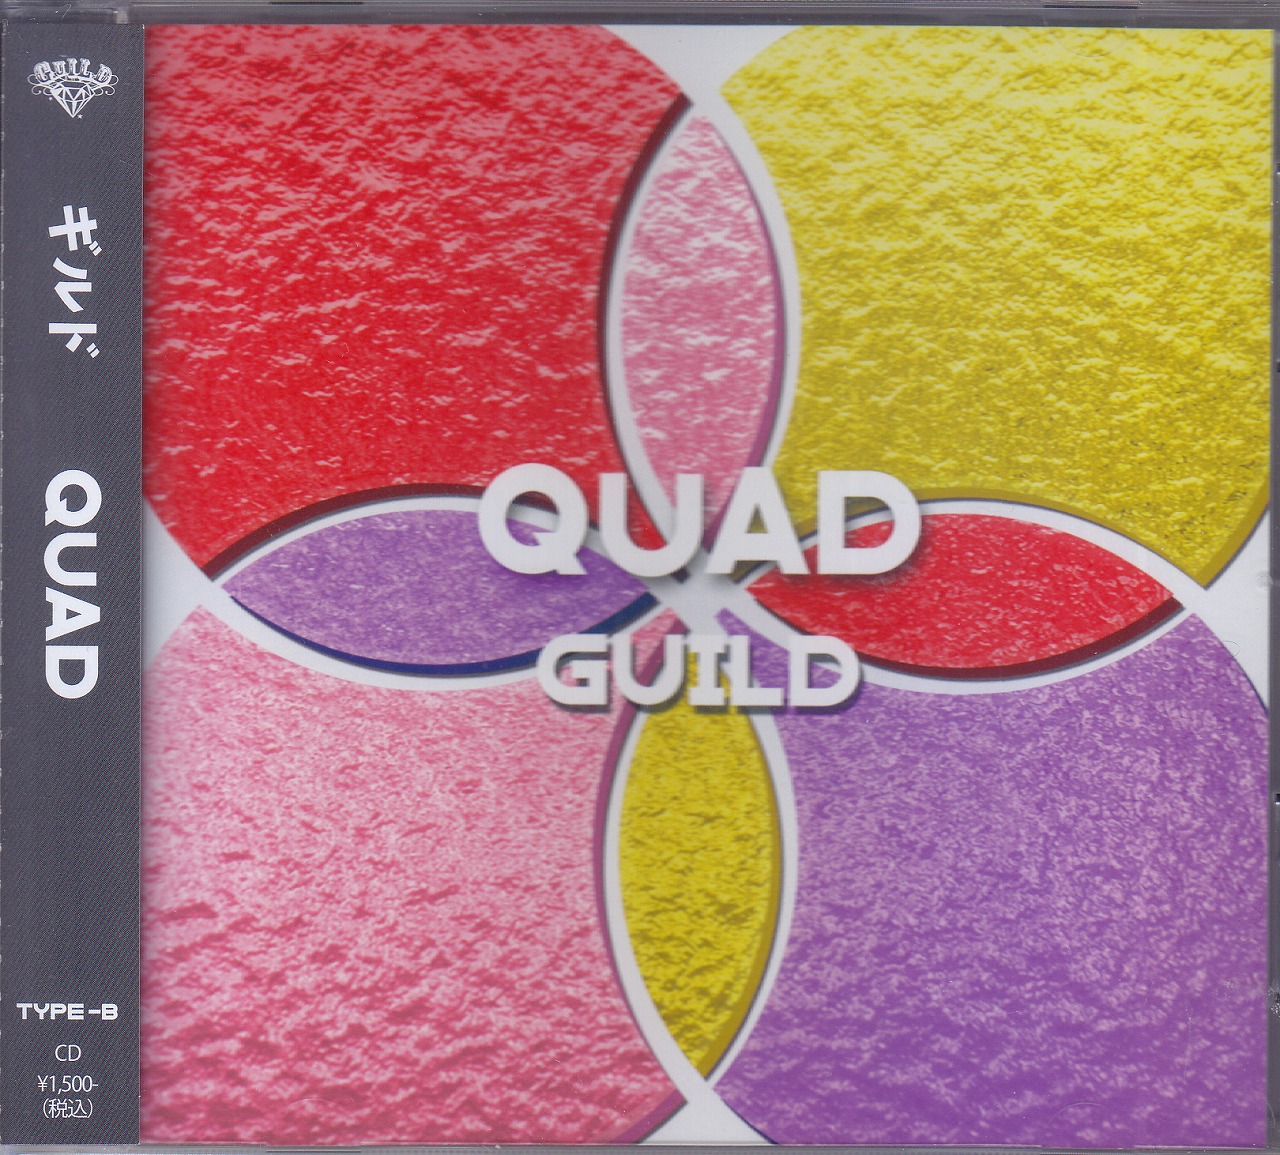 ギルド の CD 【TYPE-B】QUAD